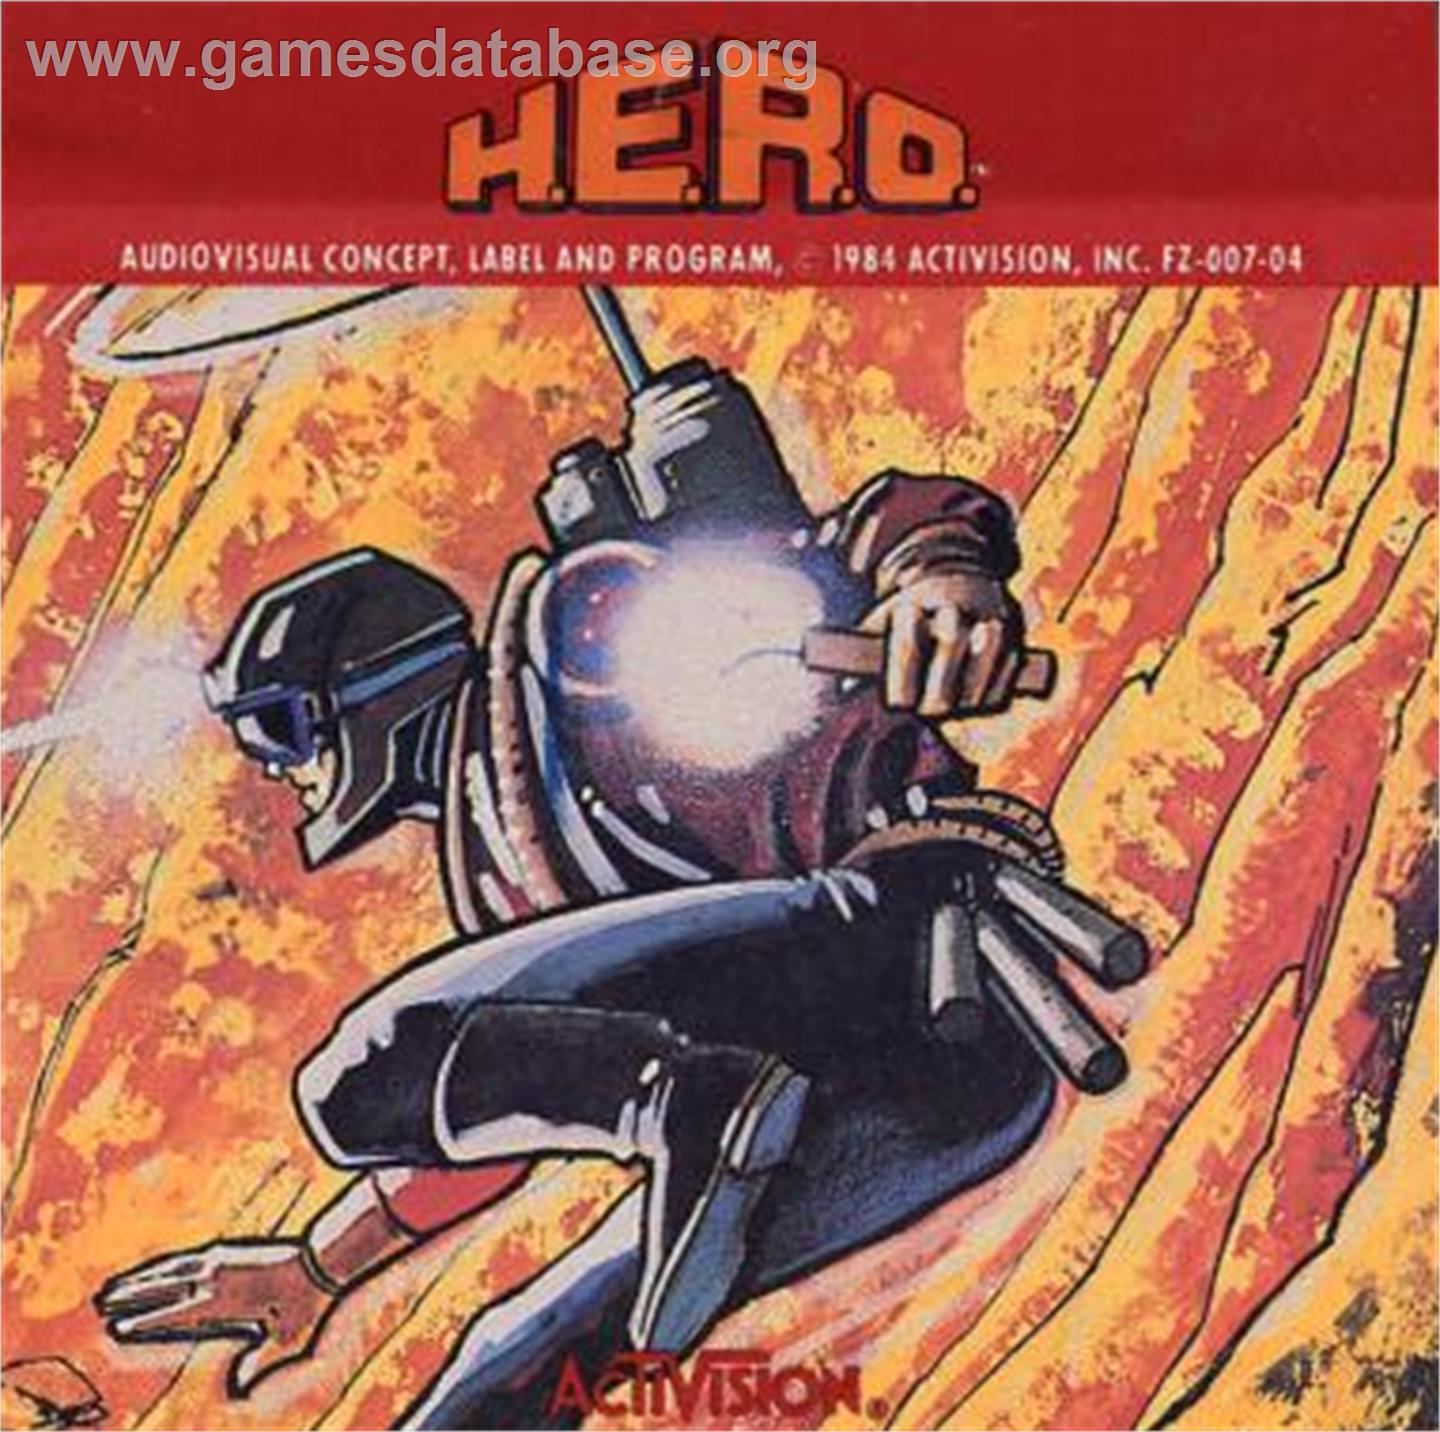 HERO - Atari 5200 - Artwork - Cartridge Top